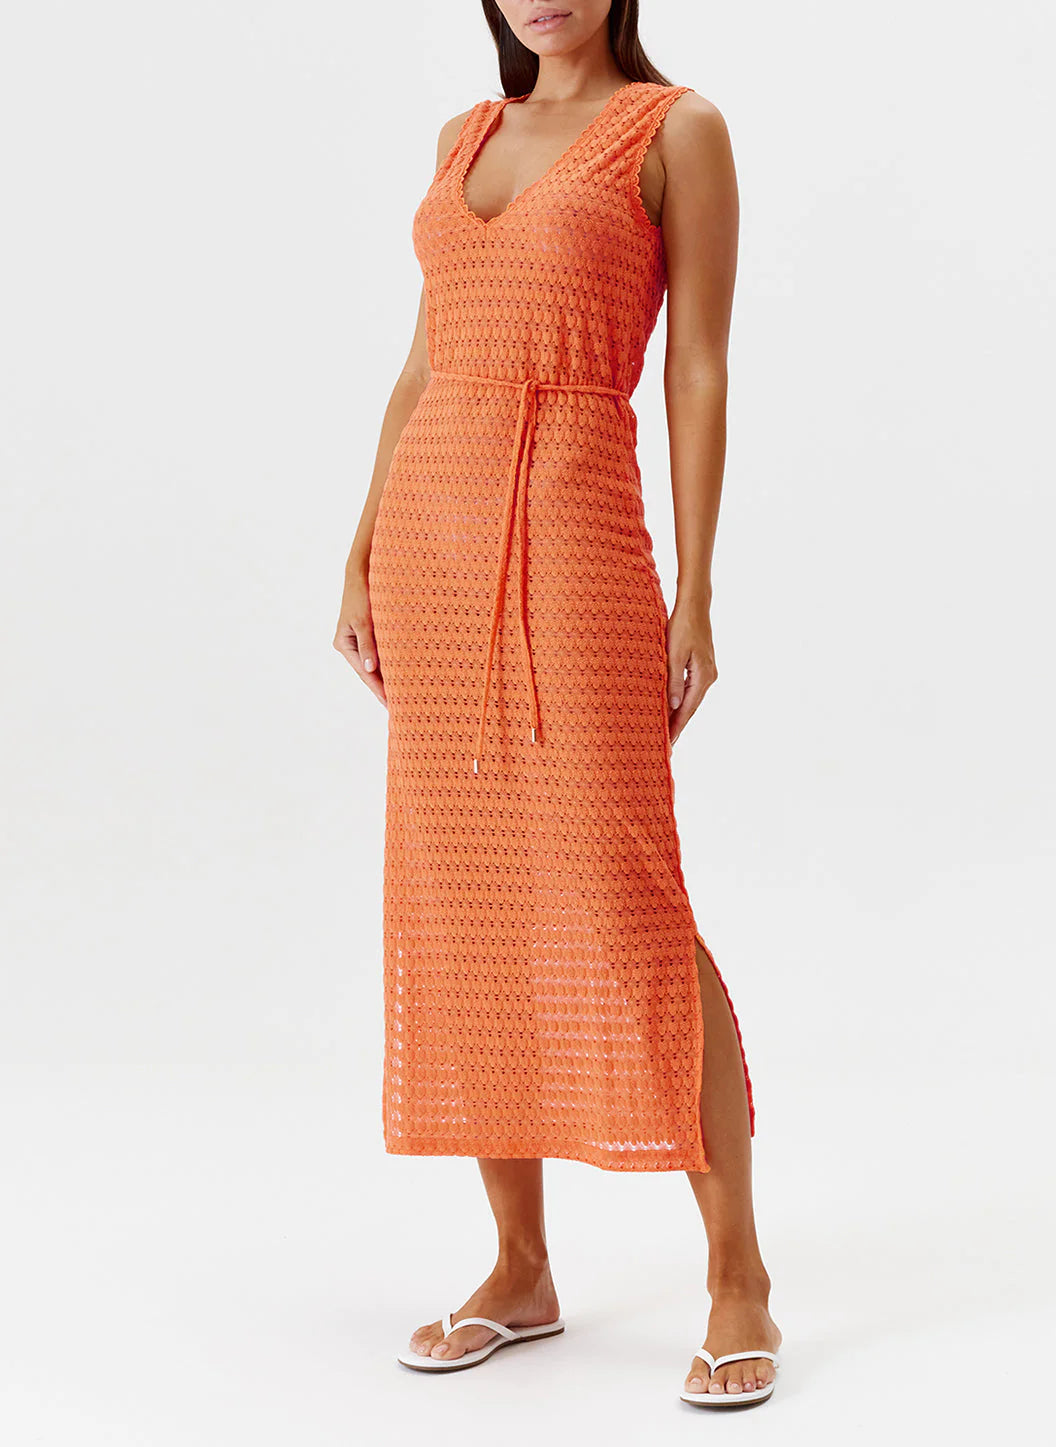 Melissa Odabash Annabel orange dress